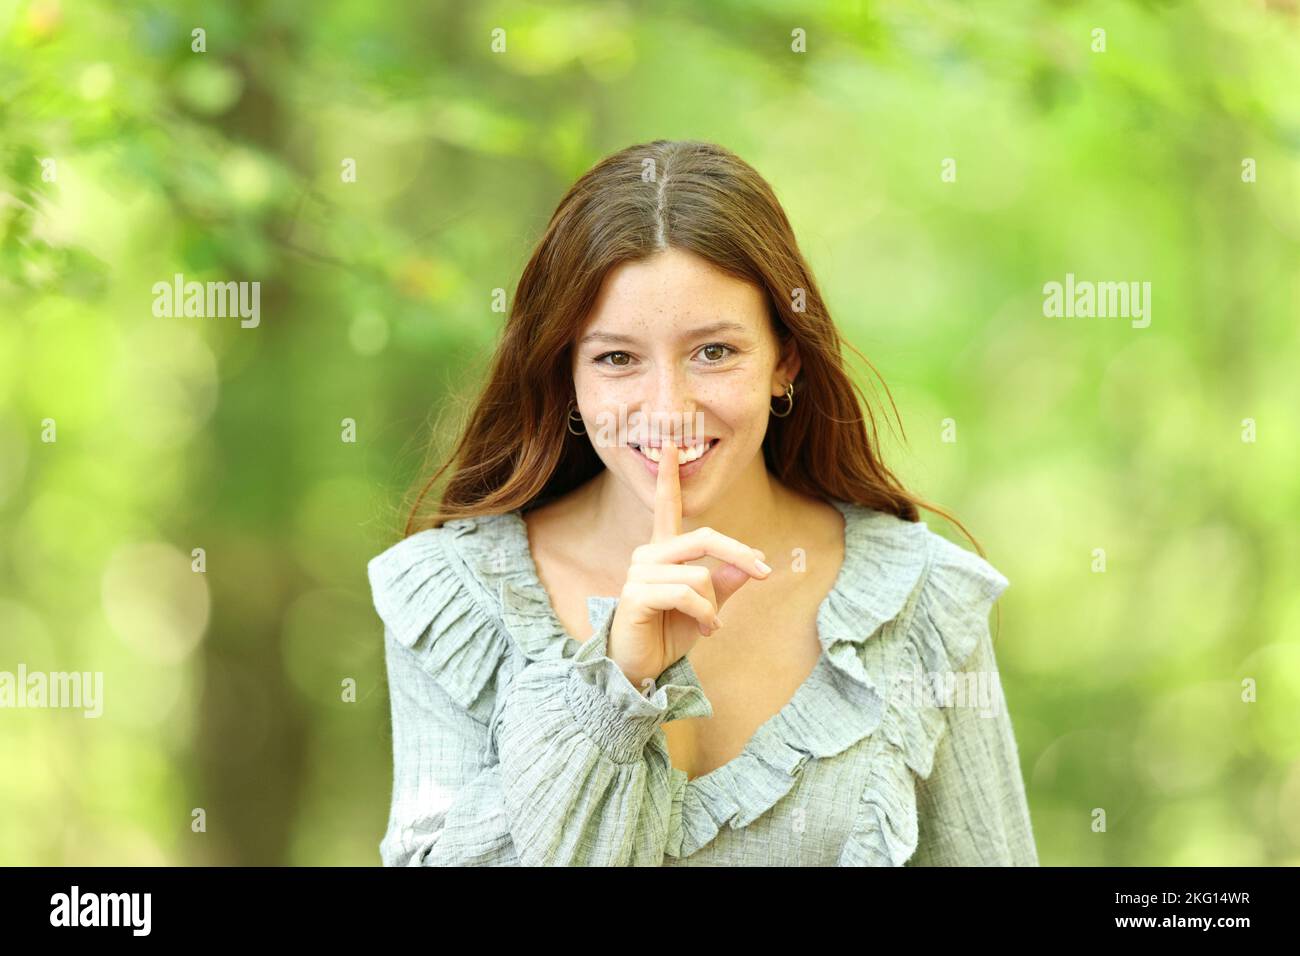 Vista frontal retrato de una mujer feliz pidiendo silencio en un fondo verde del bosque Foto de stock